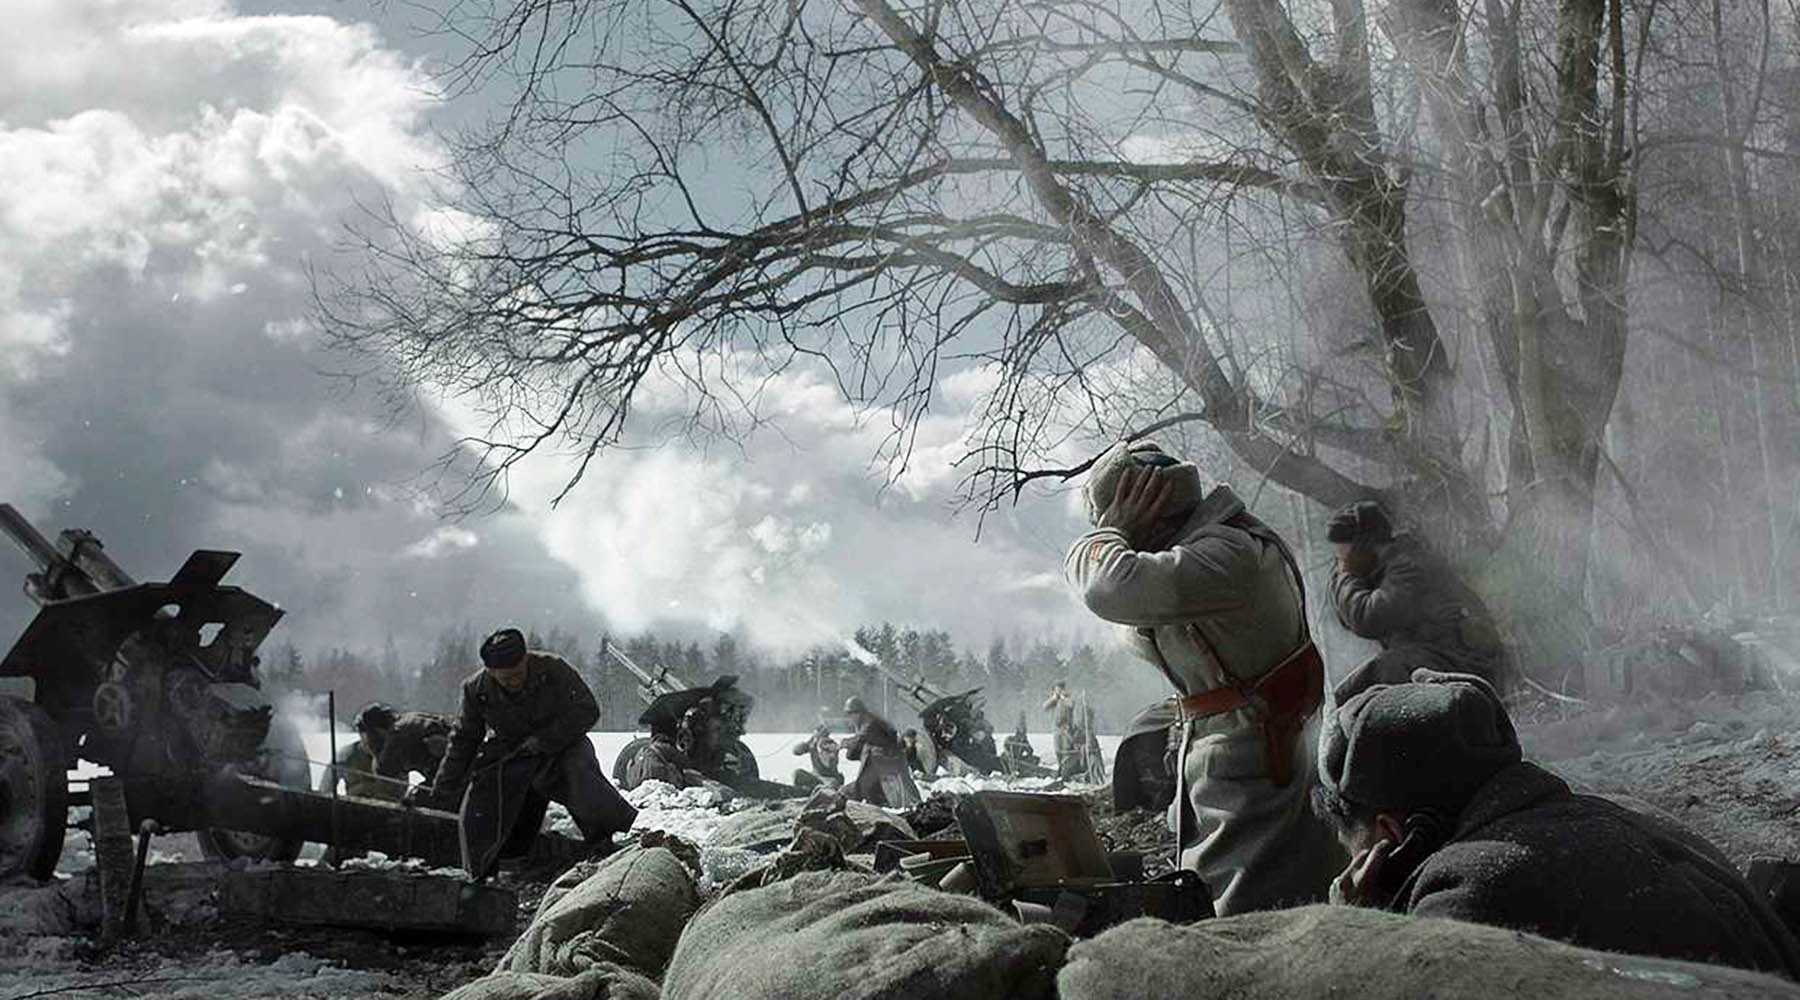 Битва за время 14. 28 Панфиловцев. Московская битва 28 Панфиловцев.